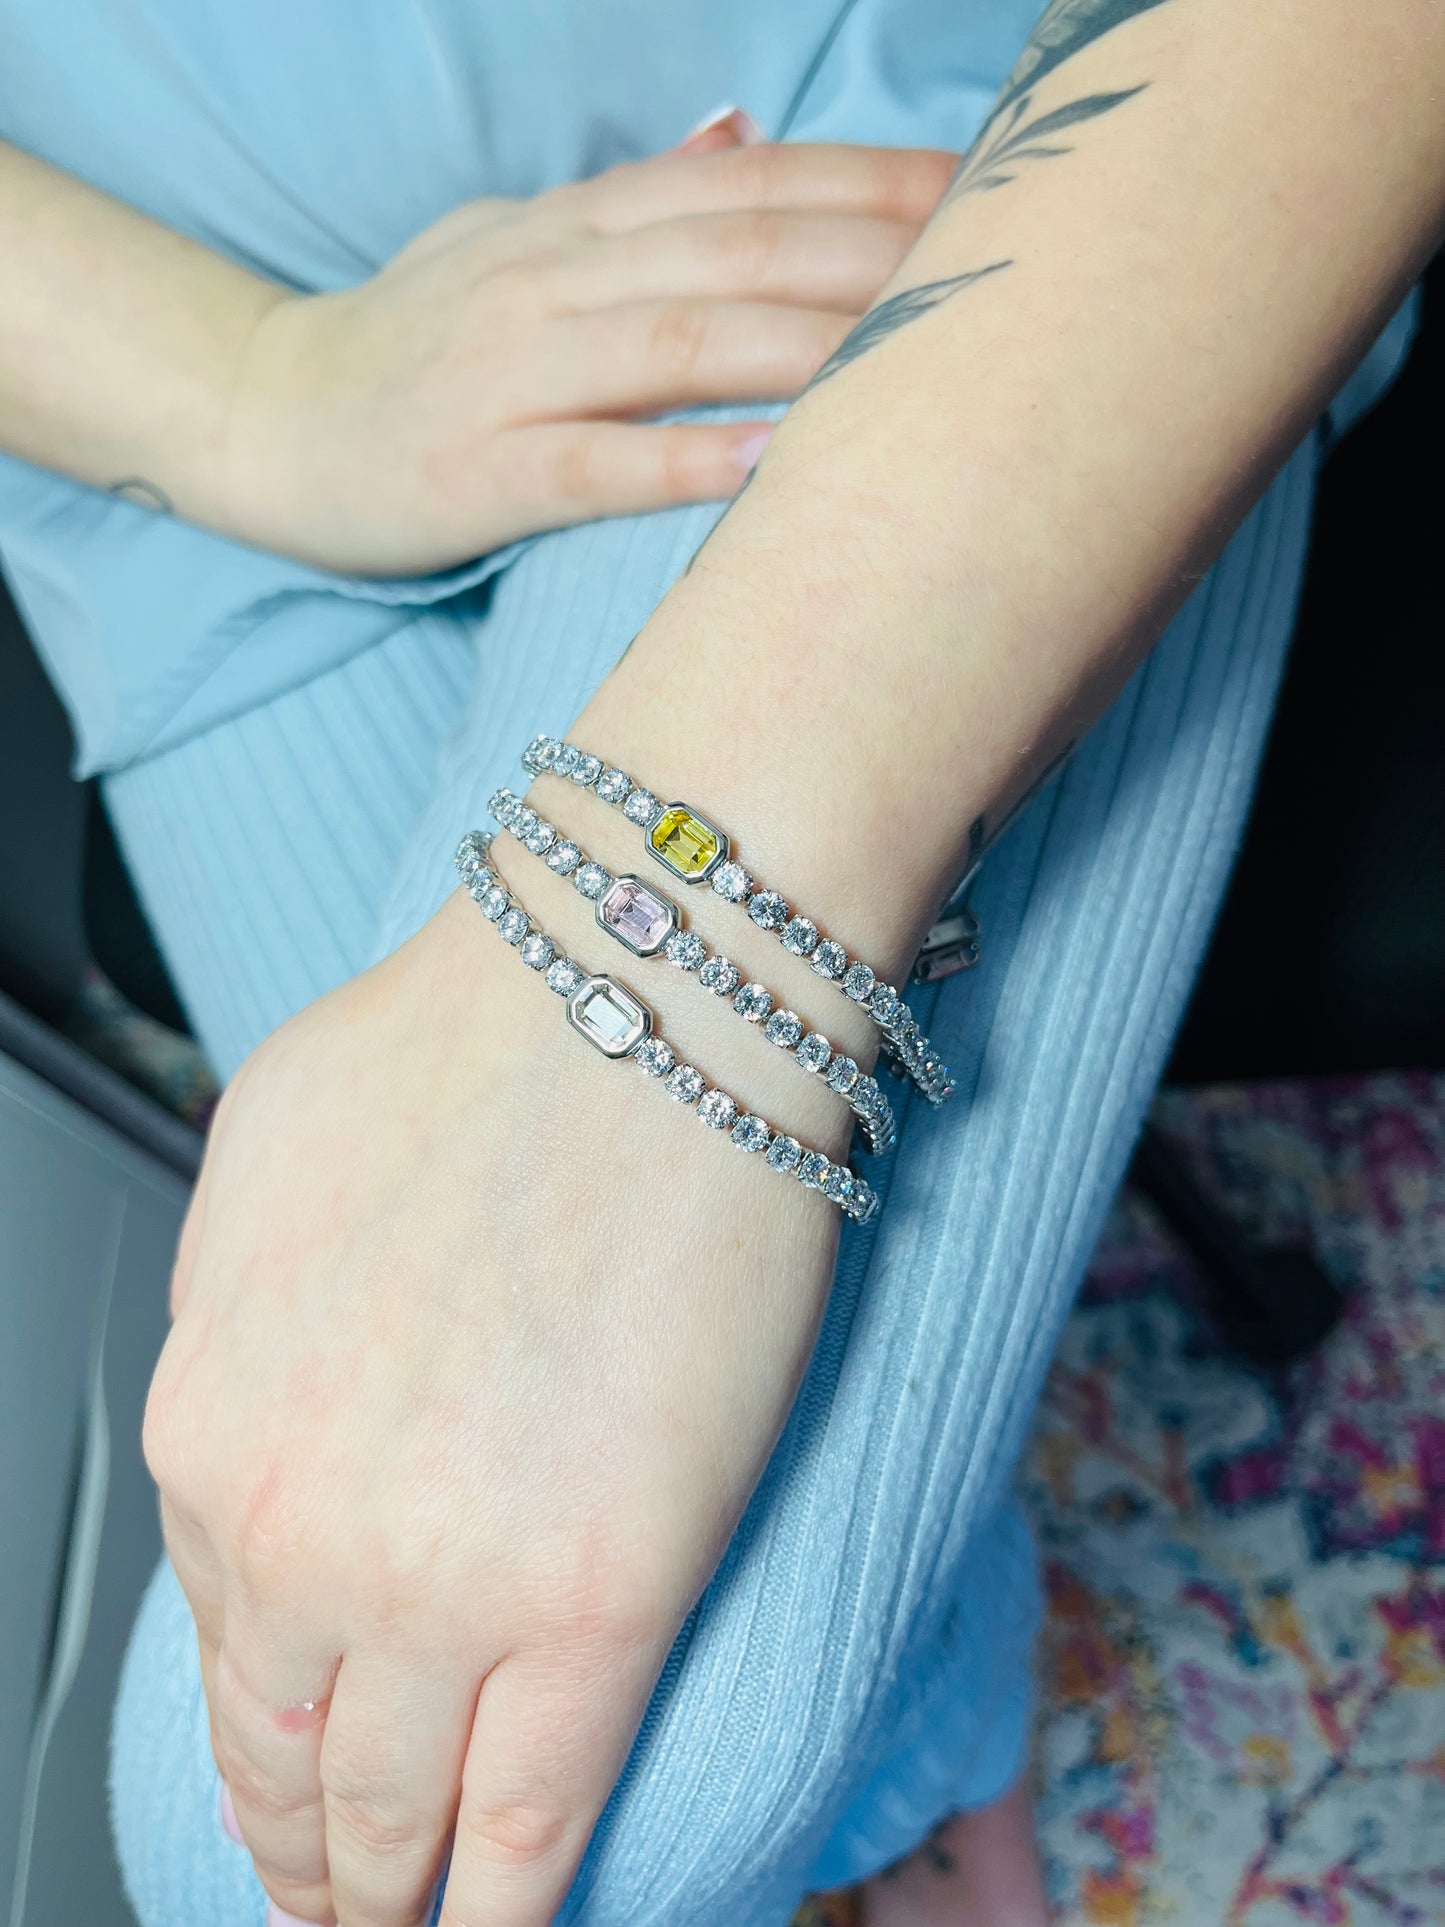 Maya bracelet